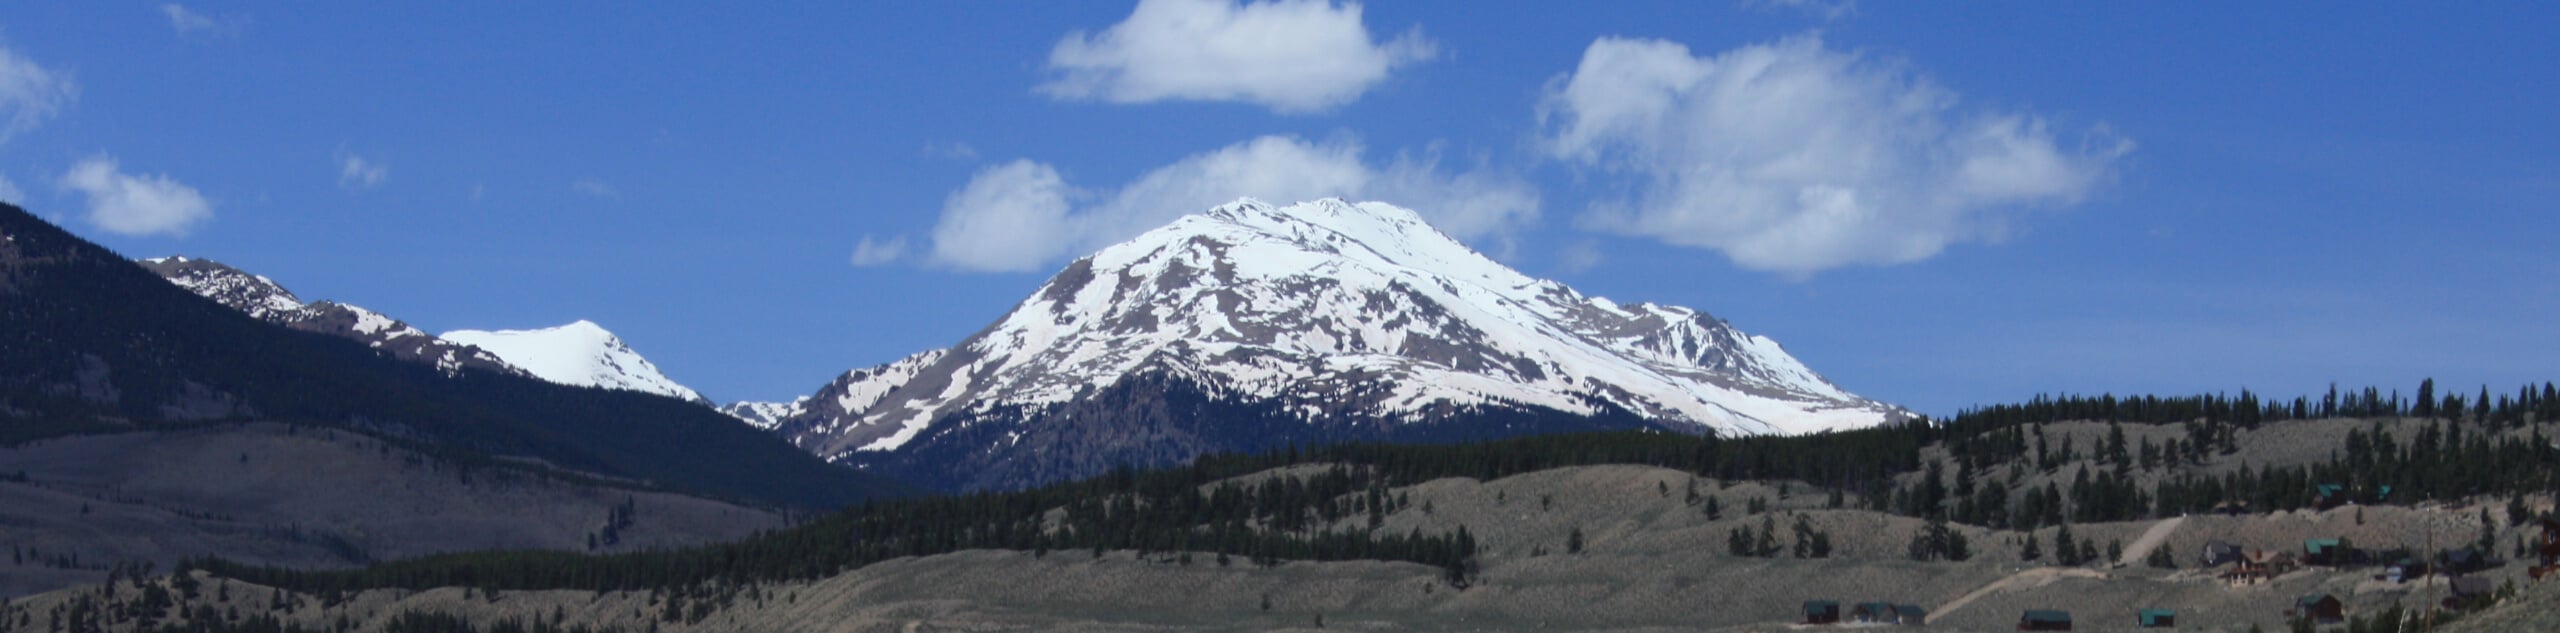 Mount Massive Southwest Slopes Hike